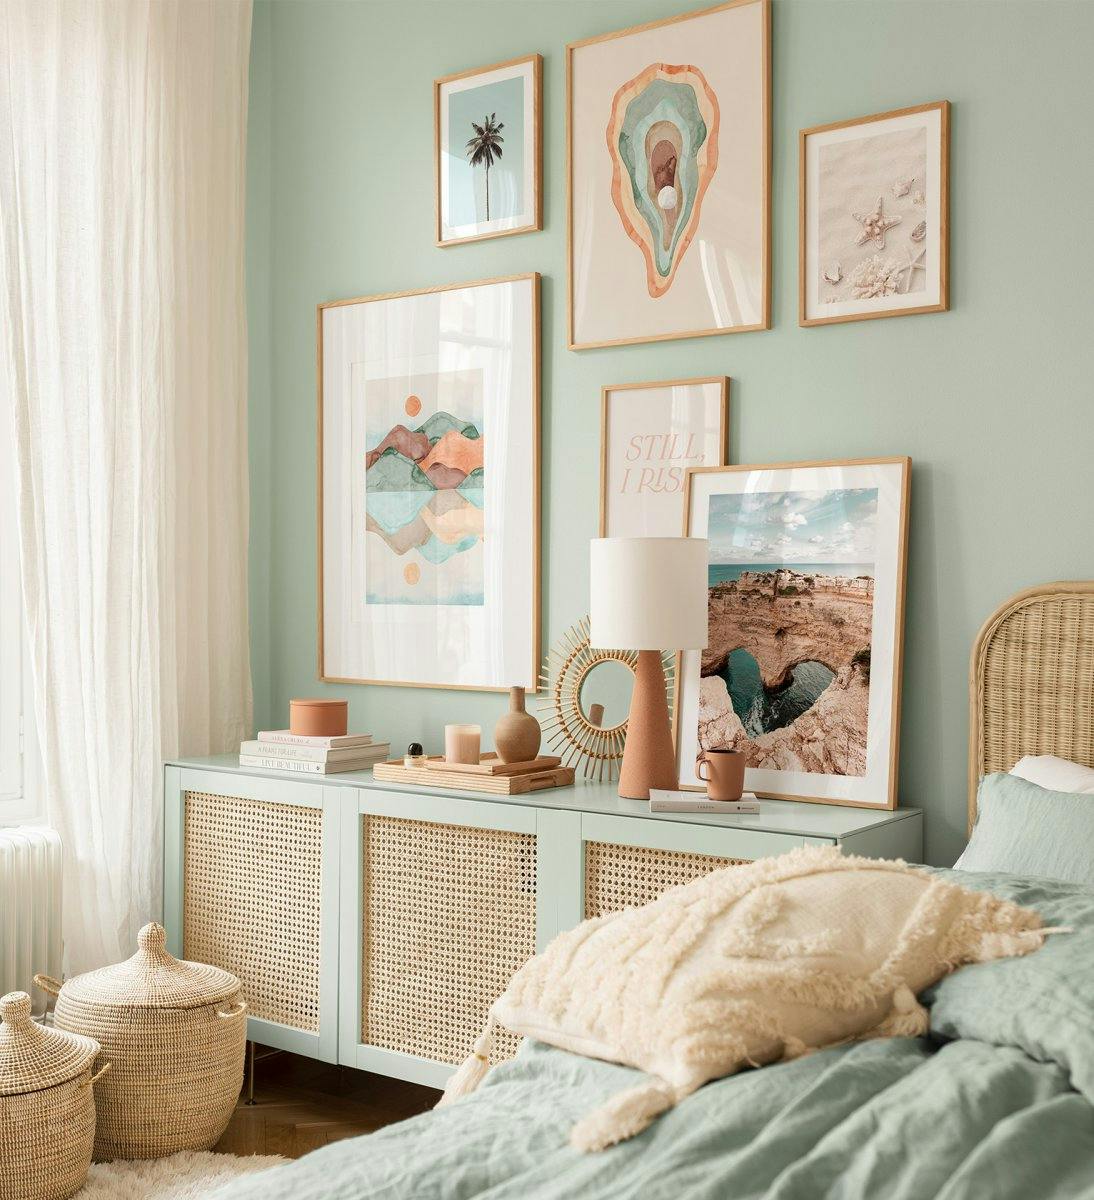 Kolorowe i artystyczne plakaty oraz fotografie w różnych naturalnych odcieniach do sypialni lub salonu